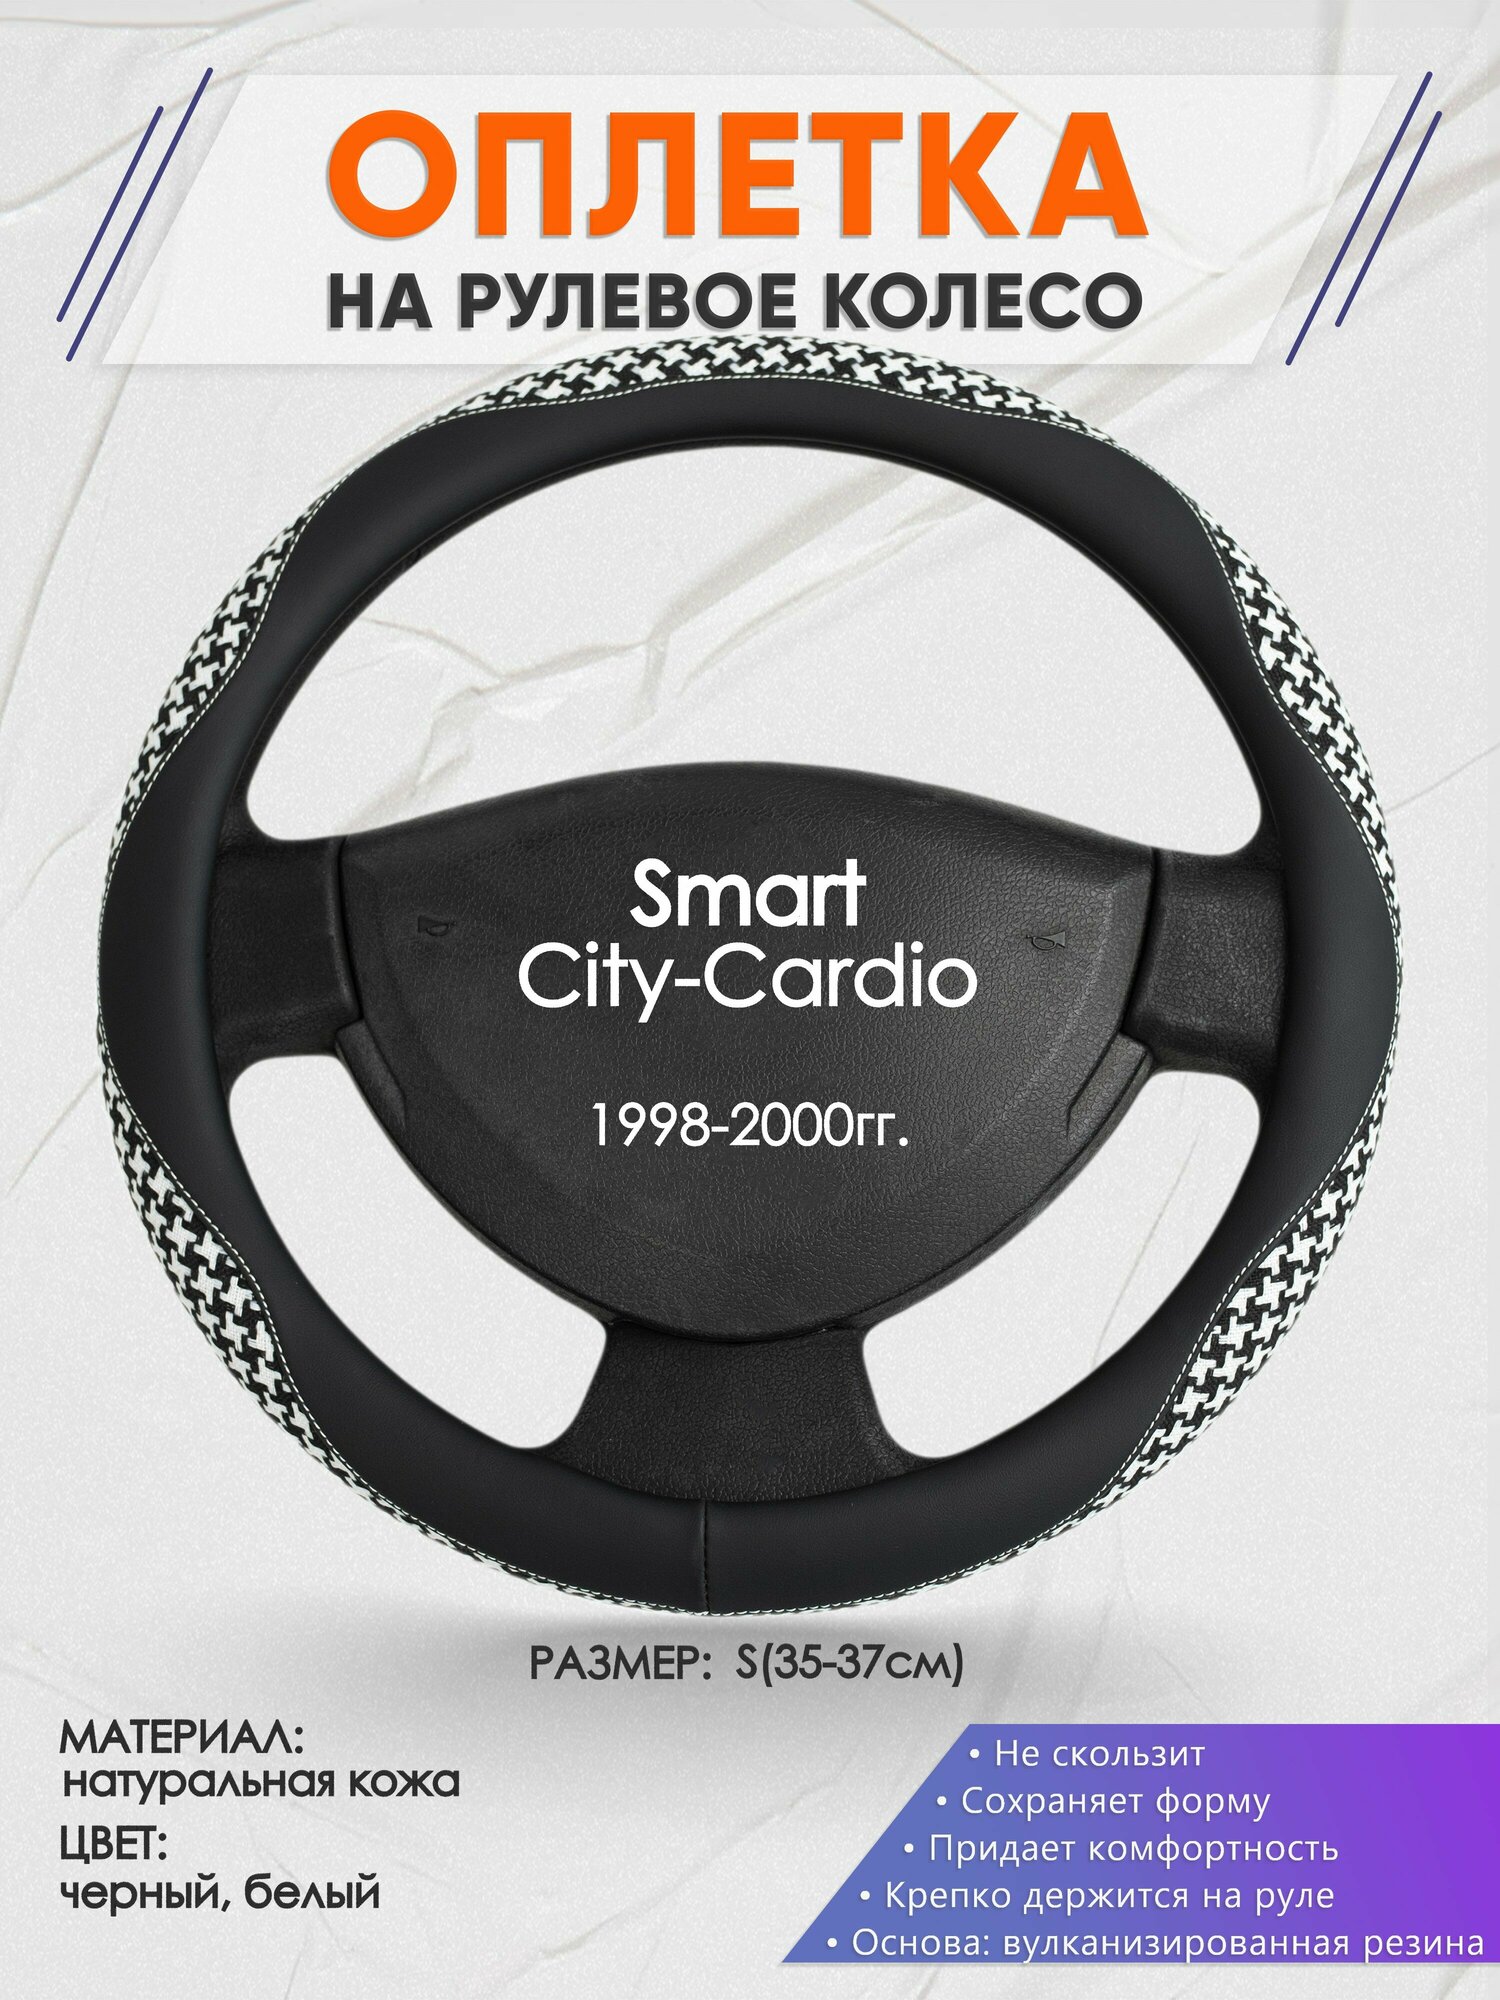 Оплетка на руль для Smart City-Cardio(Смарт Сити) 1998-2000, S(35-37см), Натуральная кожа 21